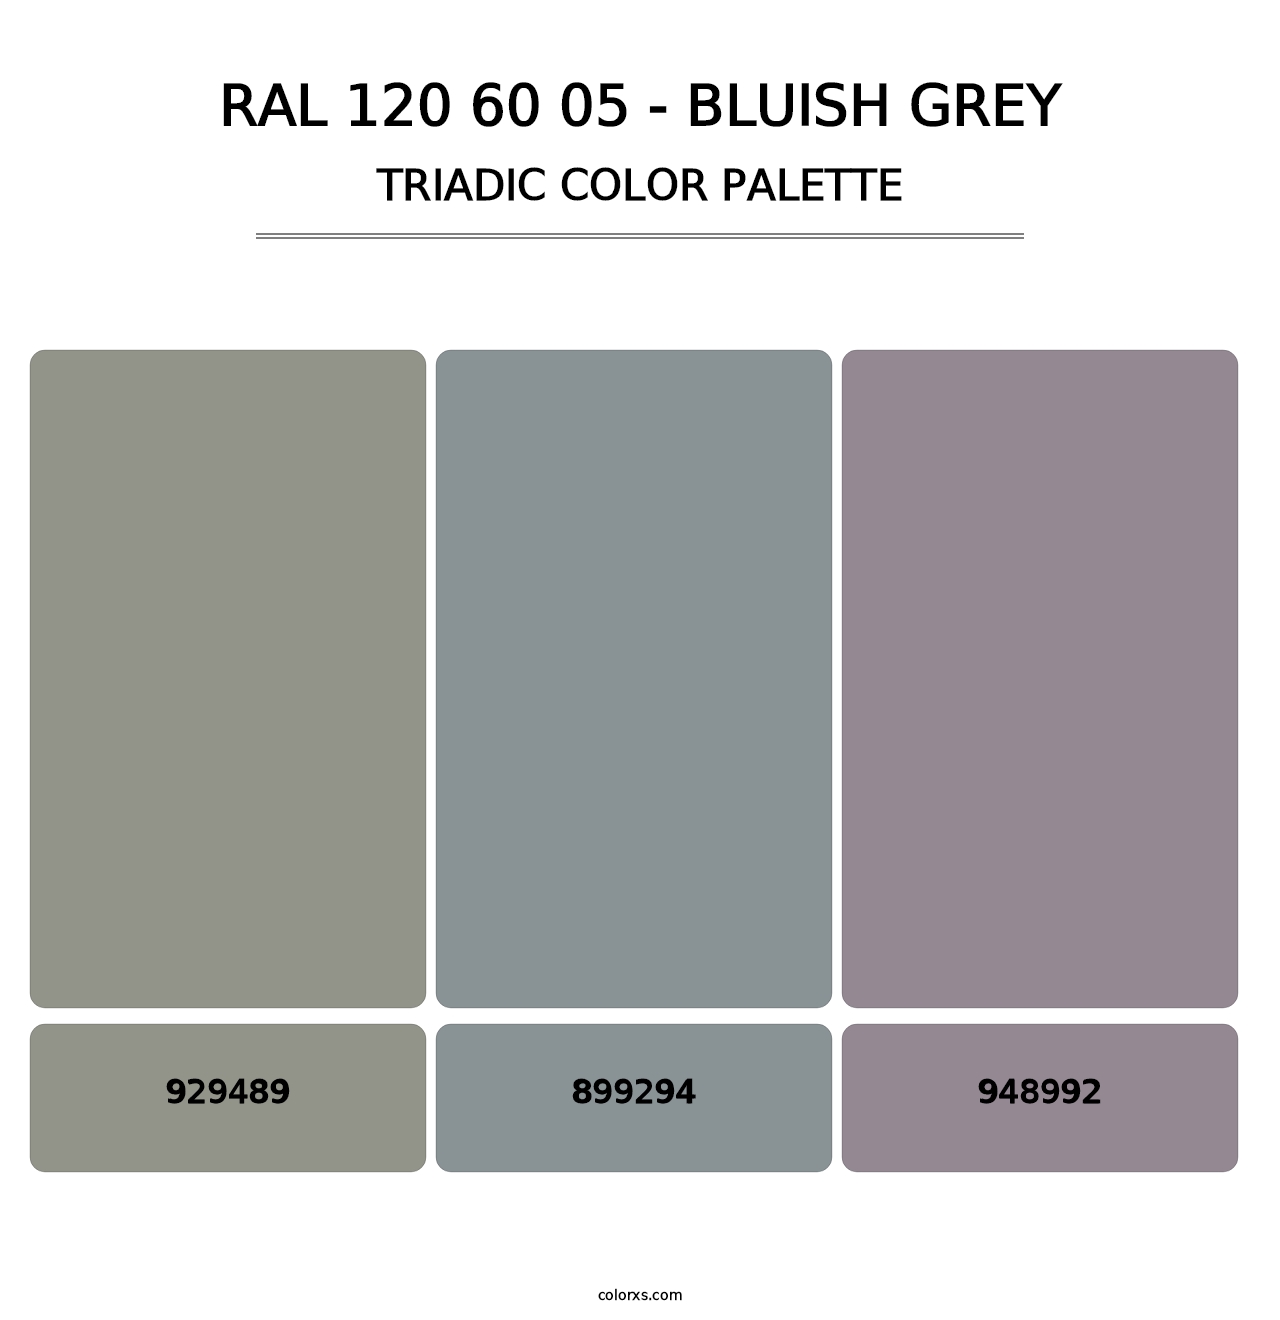 RAL 120 60 05 - Bluish Grey - Triadic Color Palette